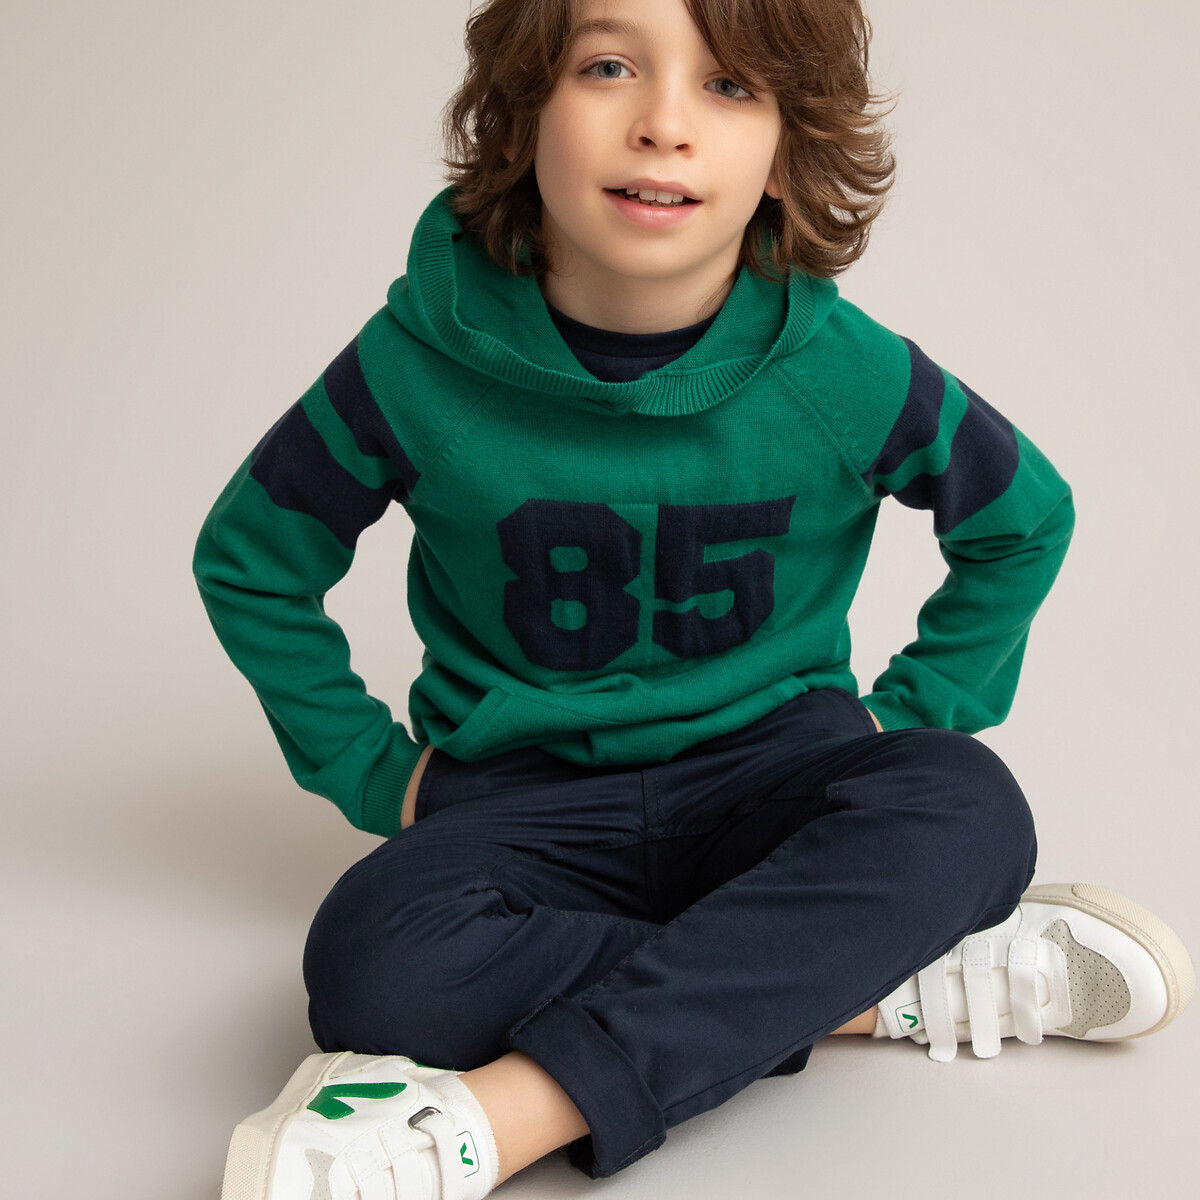 Пуловер LaRedoute С капюшоном из тонкого трикотажа жаккард 3-12 лет 5 лет - 108 см зеленый, размер 5 лет - 108 см